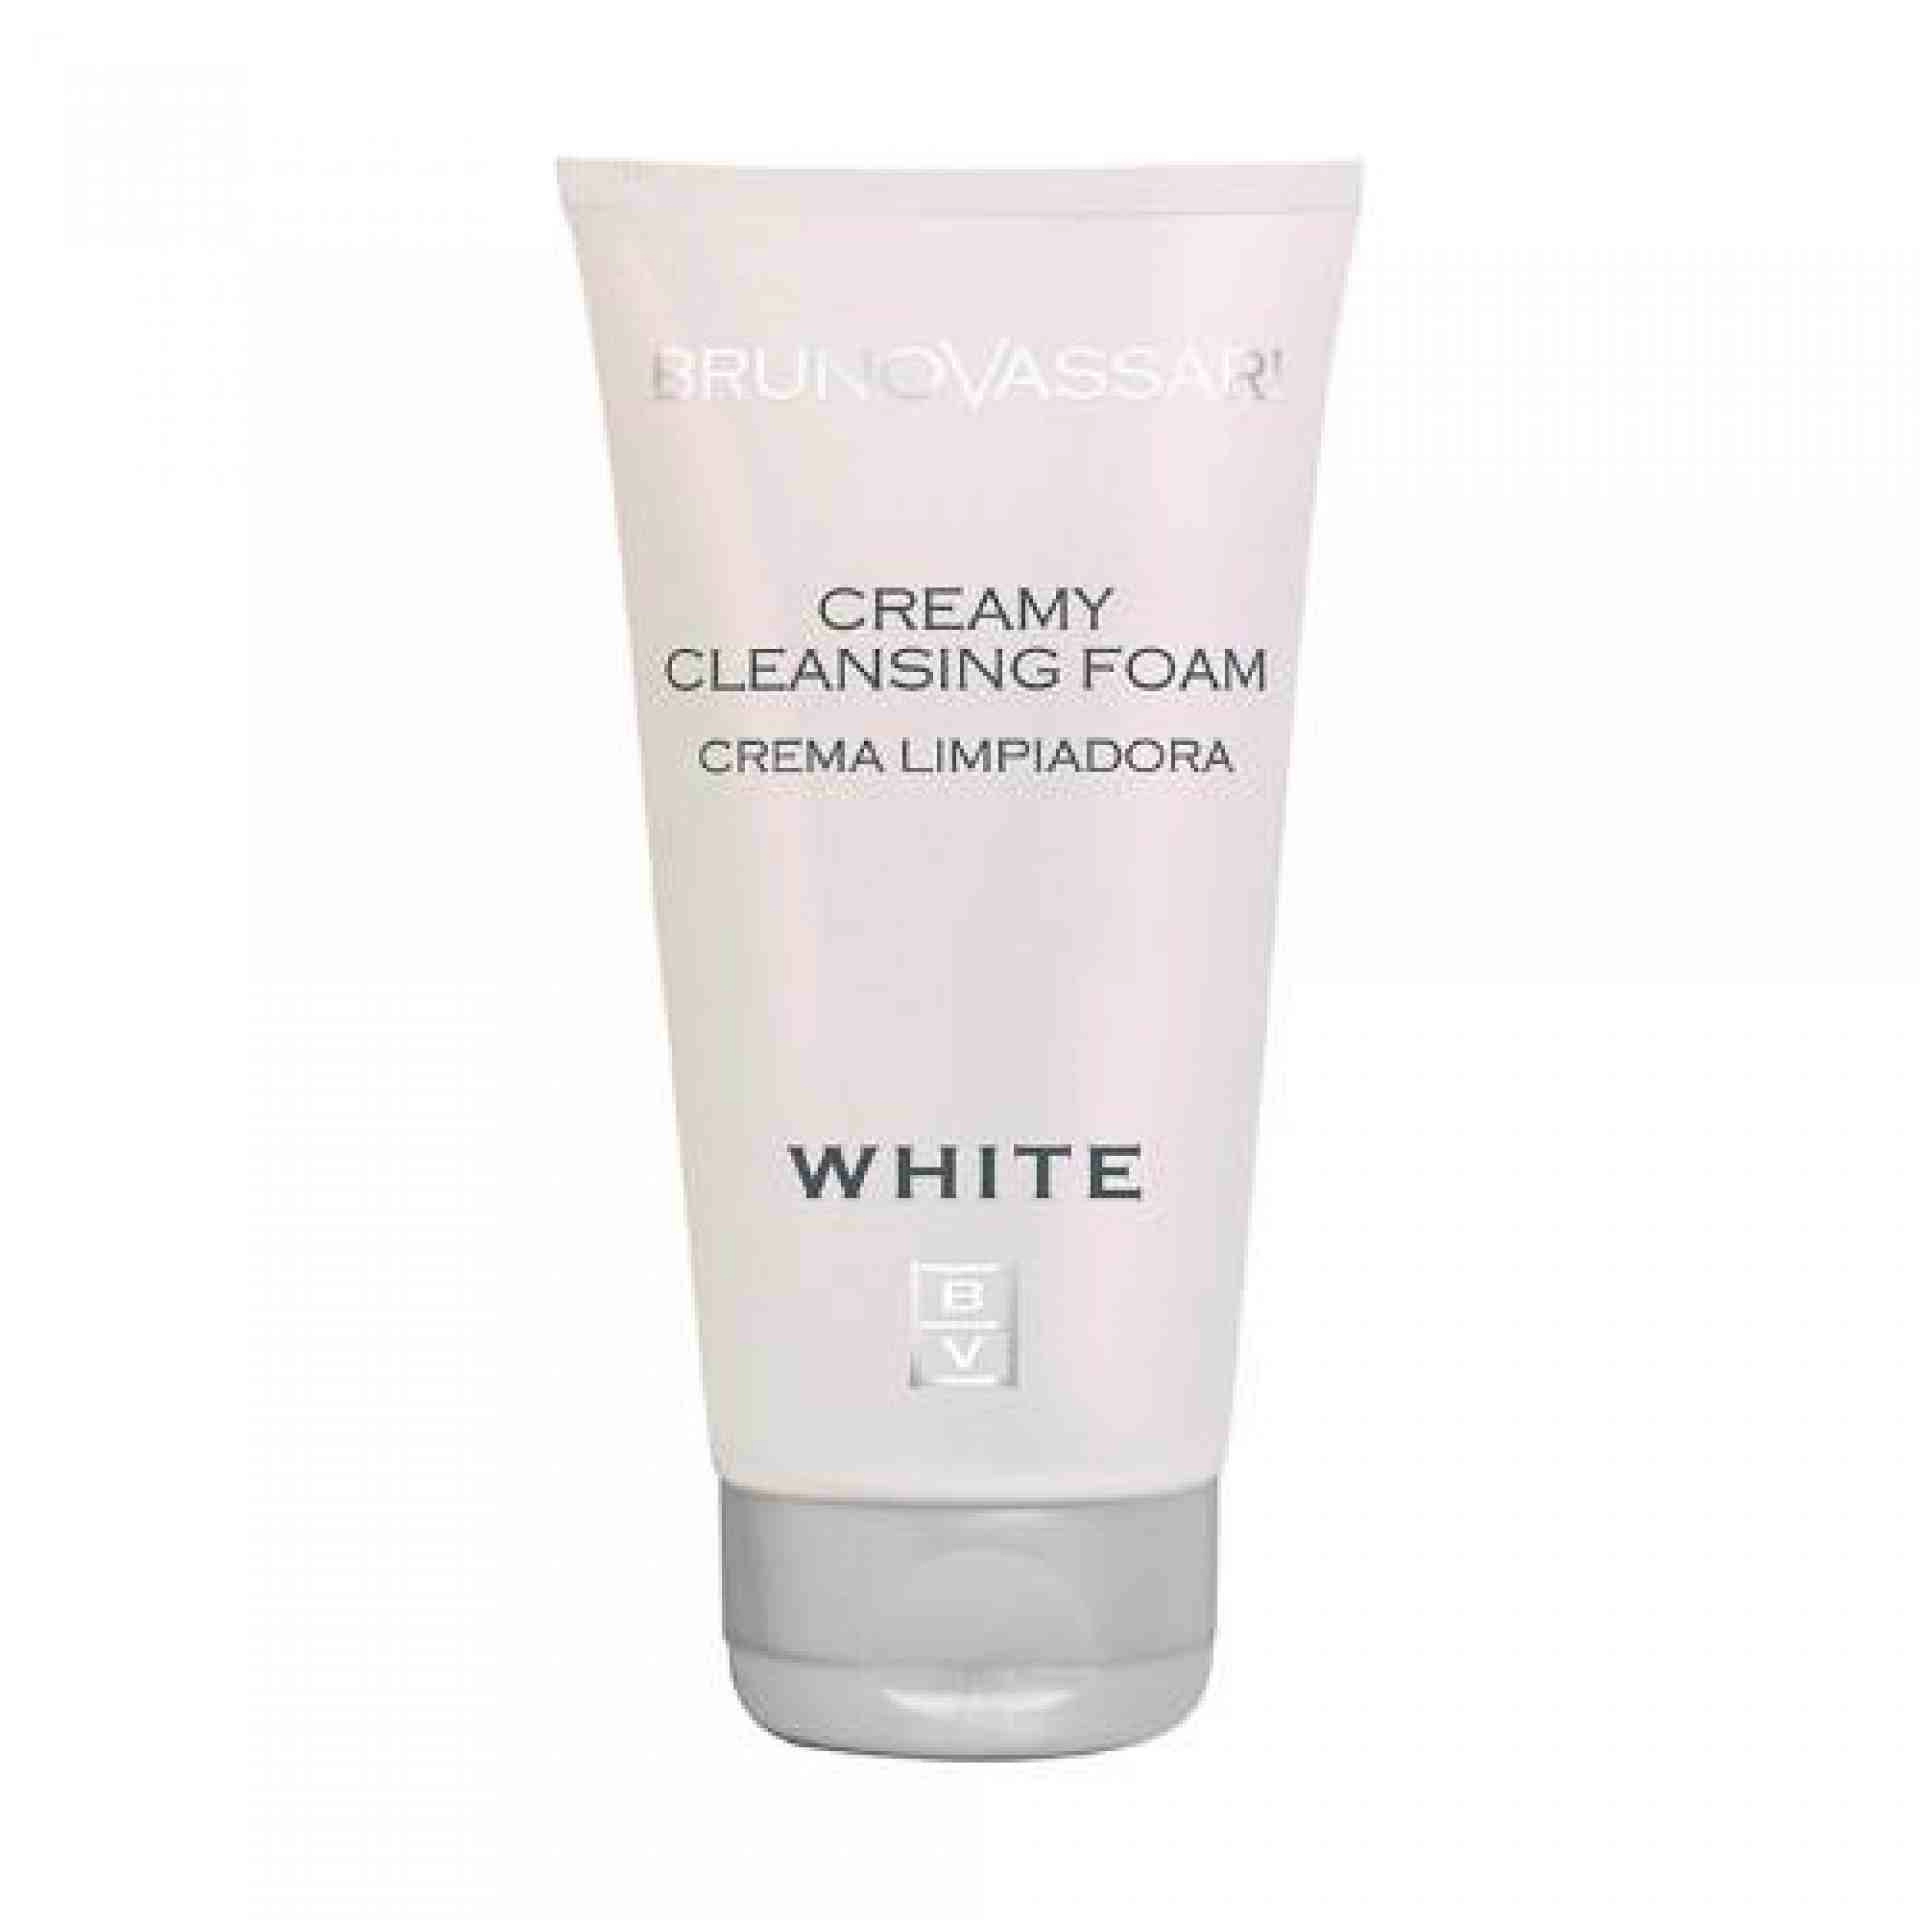 Creamy Cleansing Foam | Crema limpiadora 150ml - White - Bruno Vassari ®